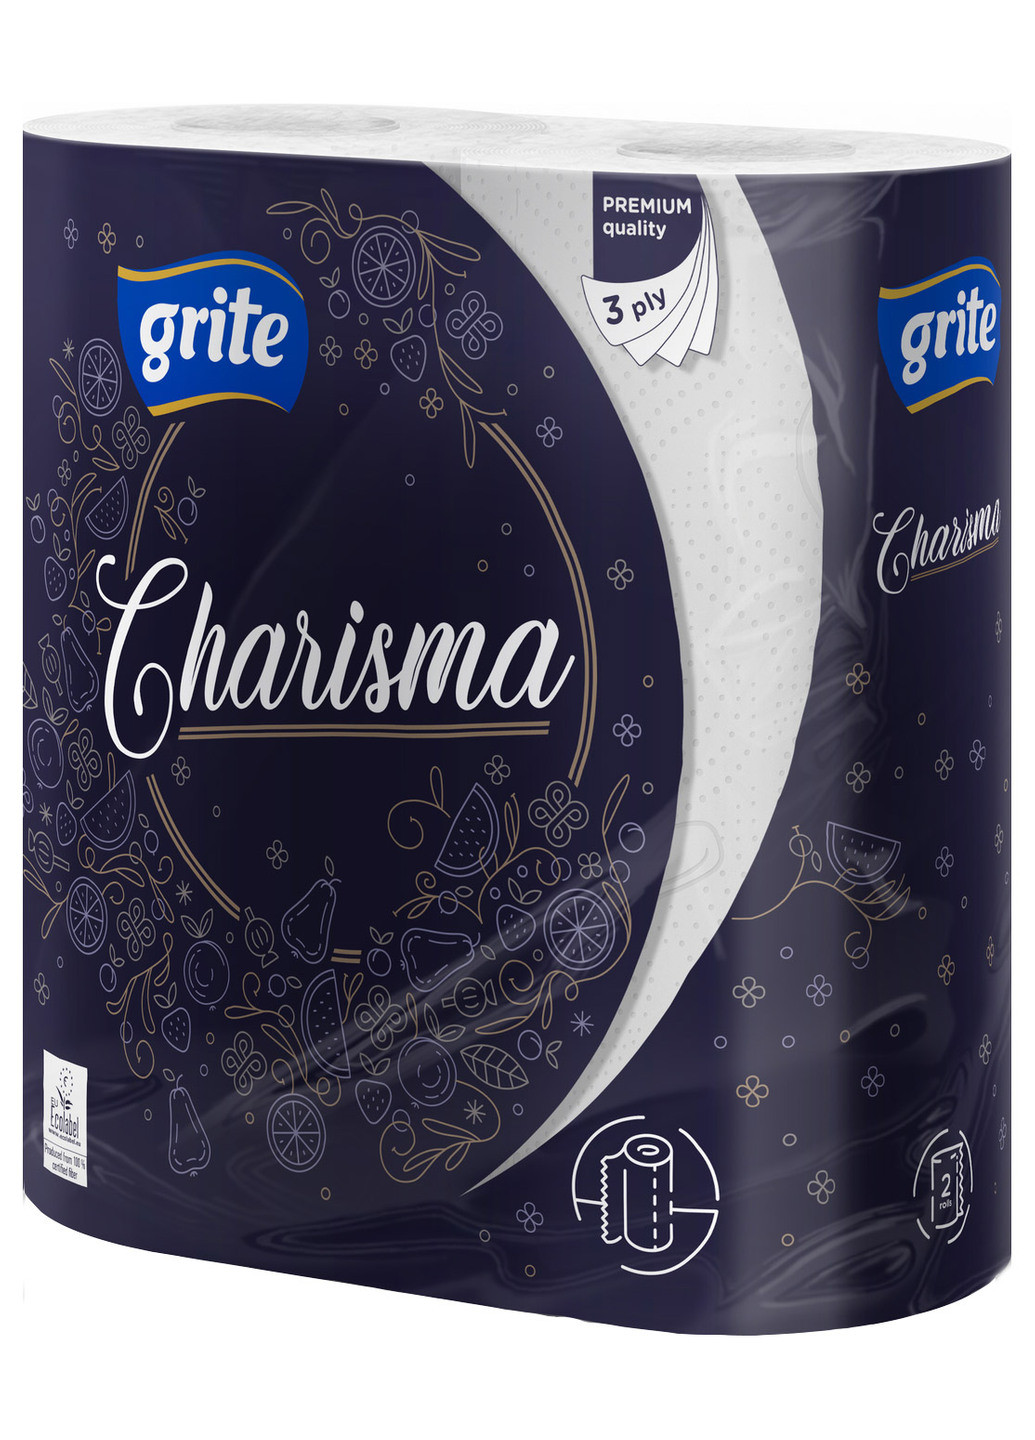 Бумажные полотенца Charisma 2 шт. Grite (199671322)